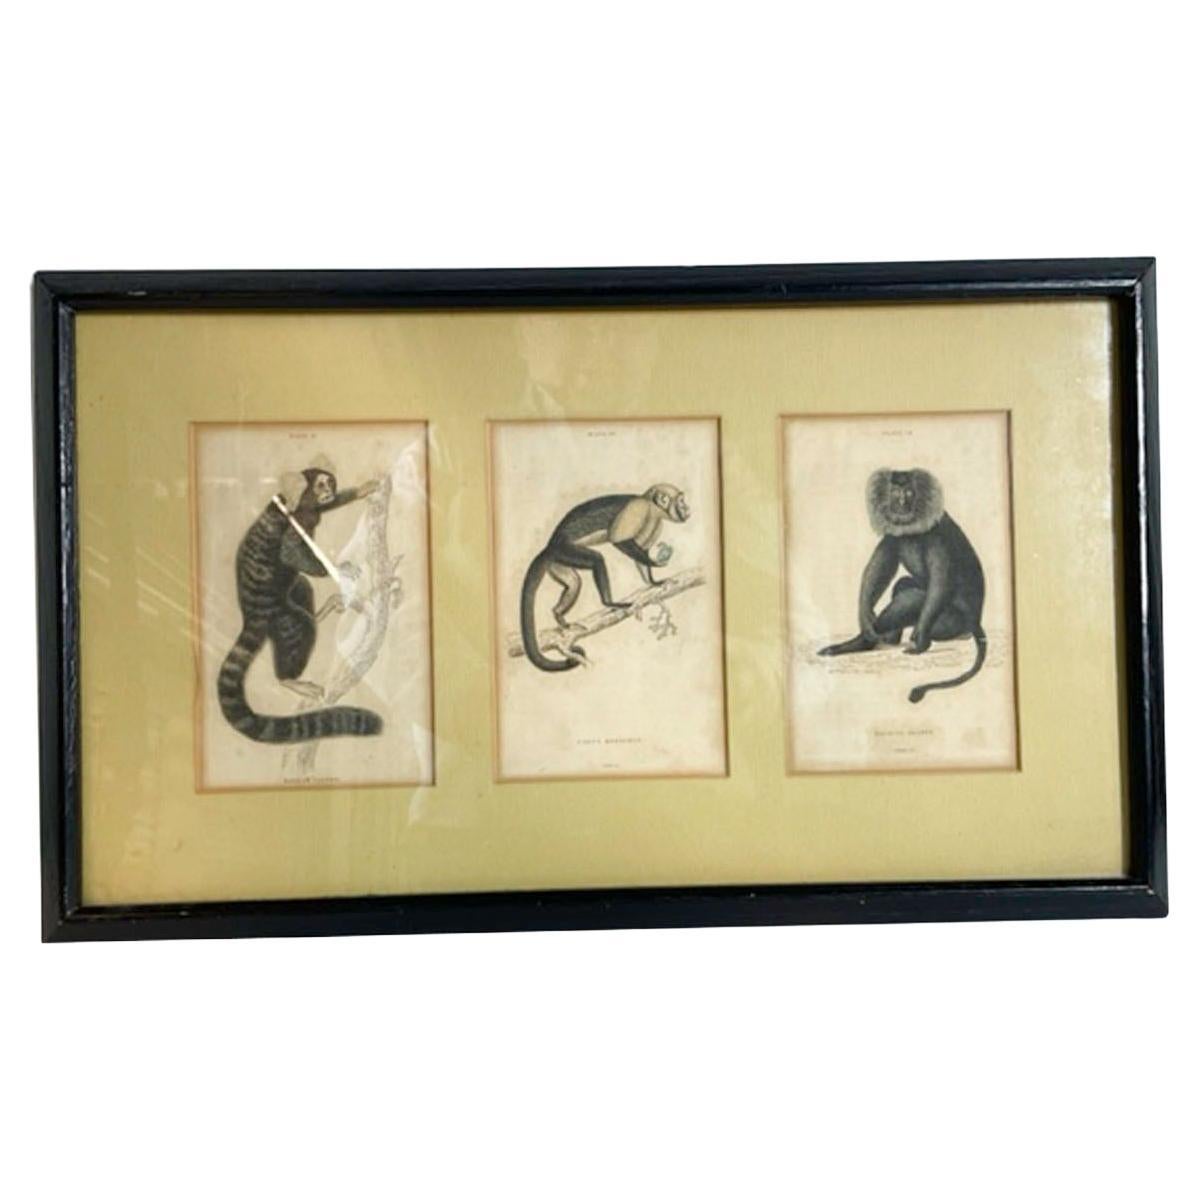 Drei handkolorierte Gravuren von Affen aus dem 18. und 19. Jahrhundert, mattiert und gerahmt